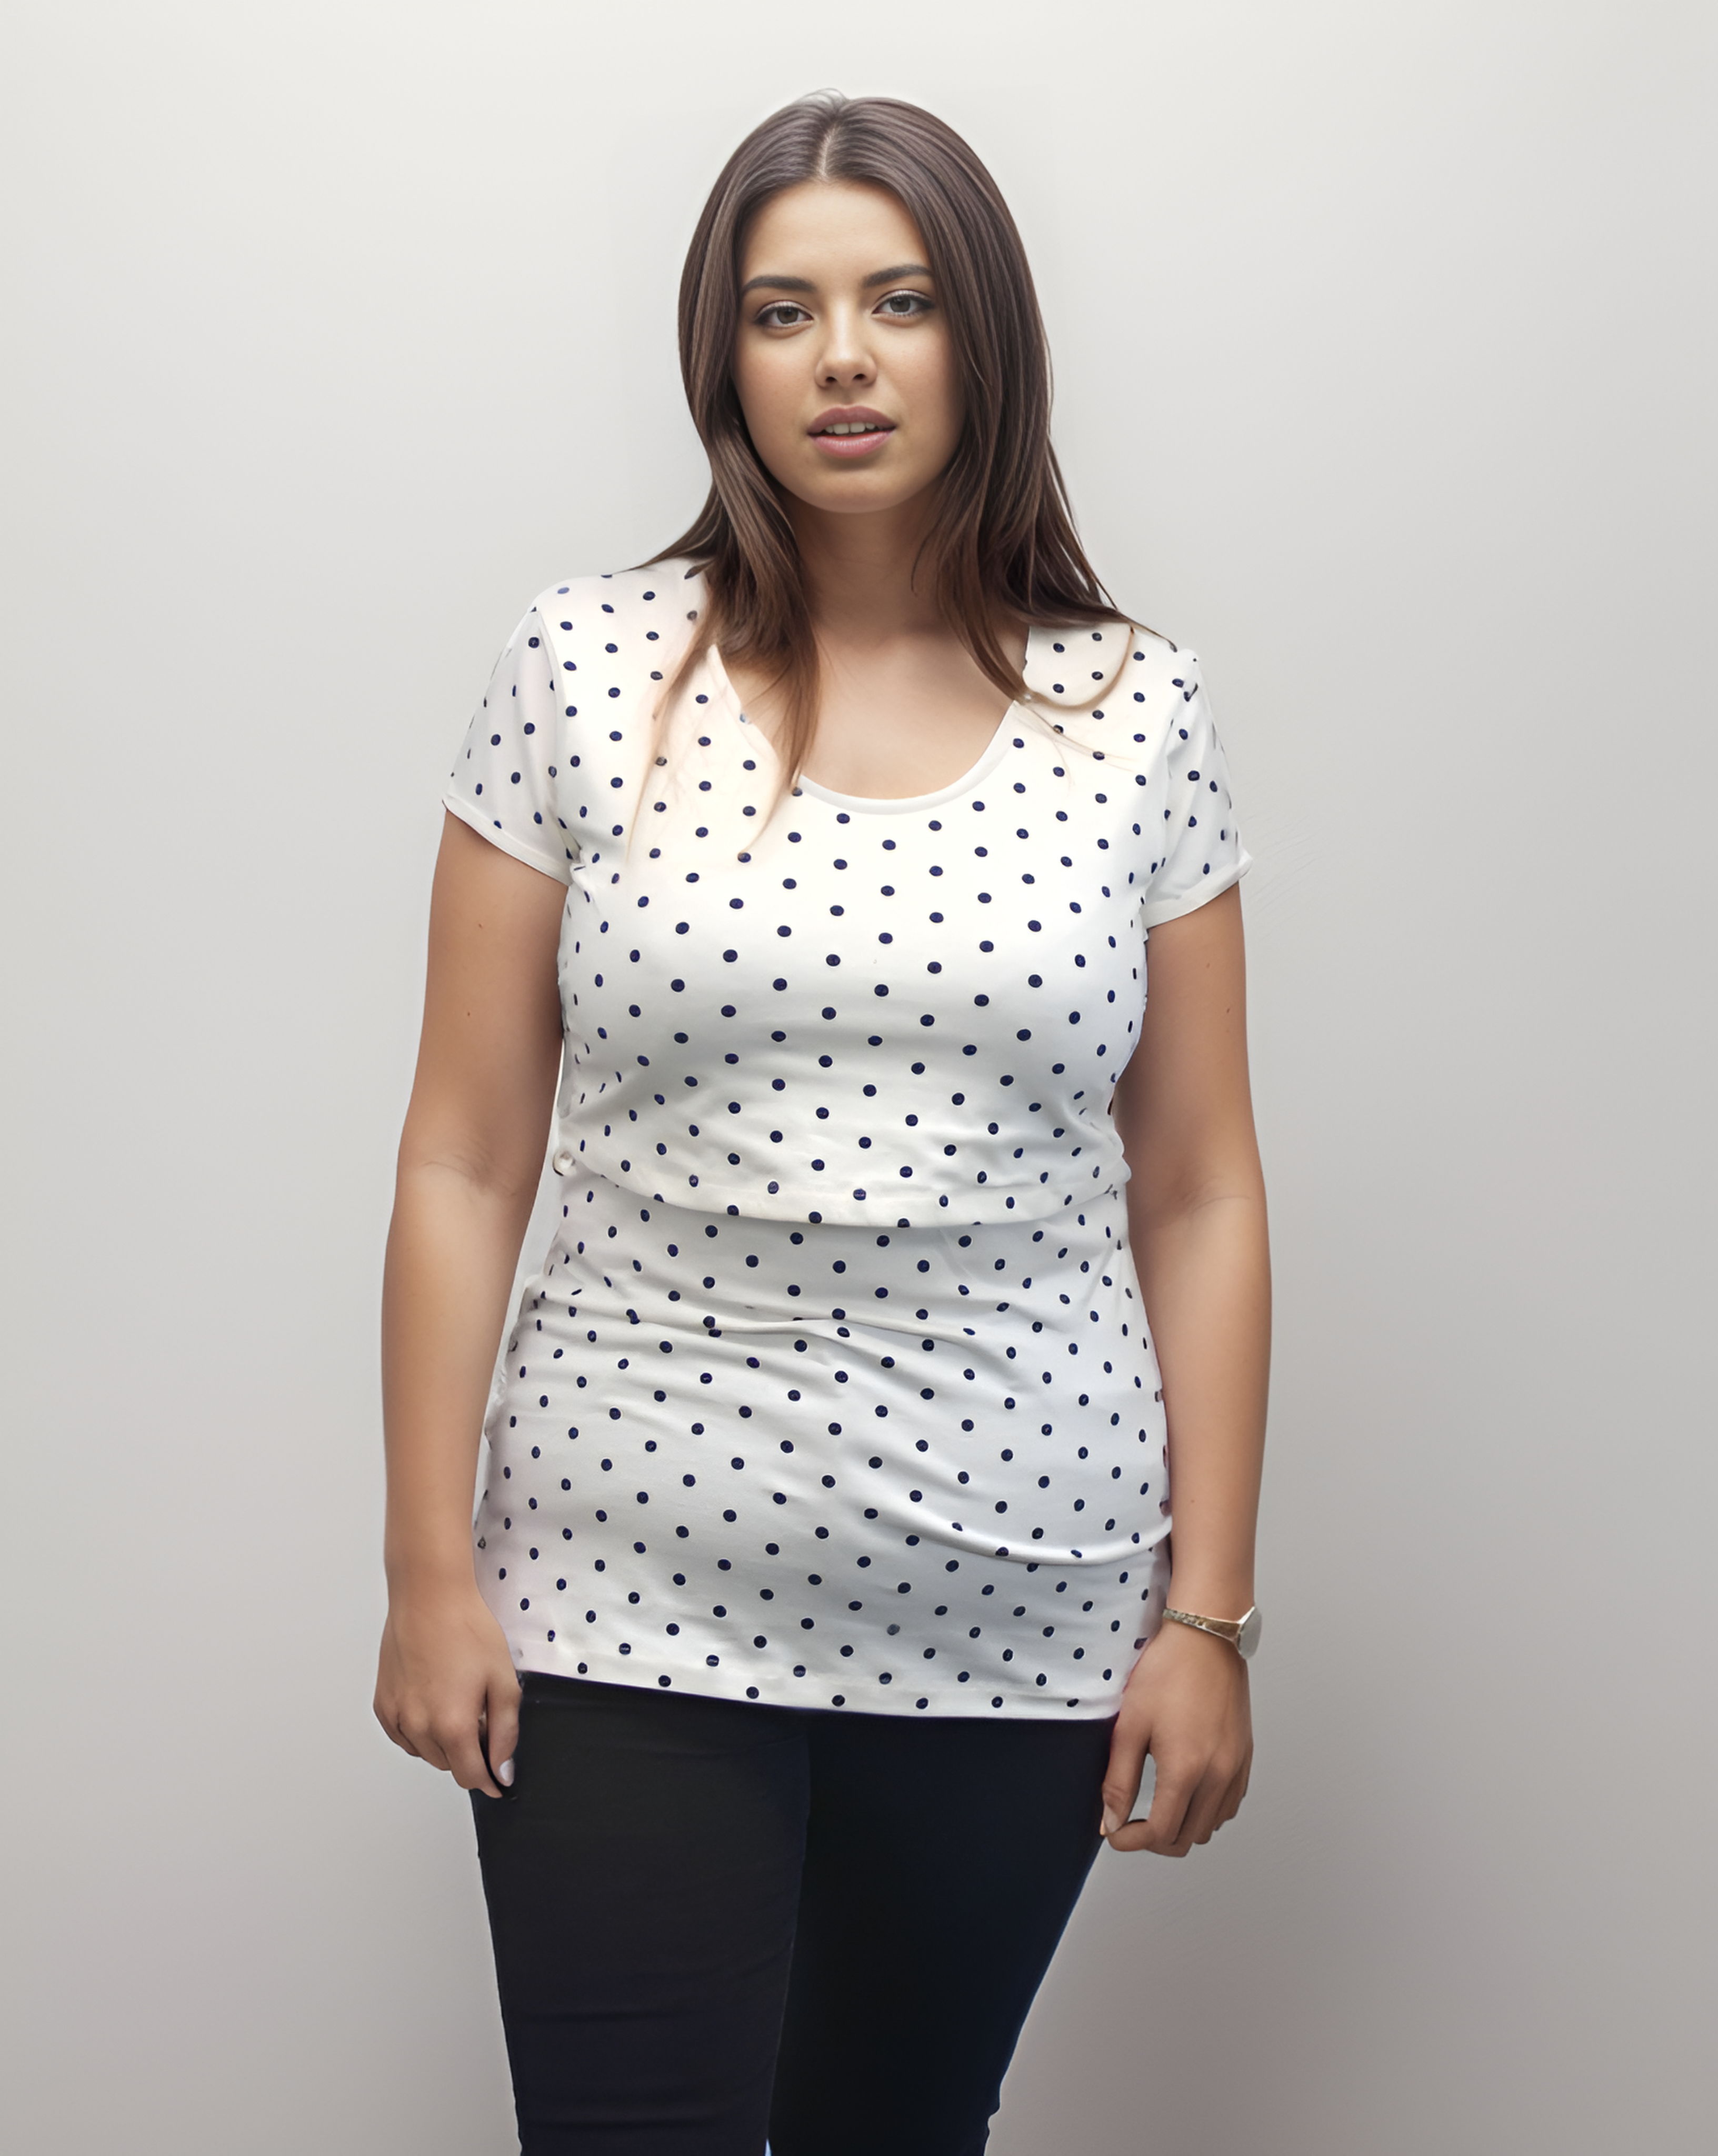 Bshirt Nursing Short Sleeve T-shirt in Cream & Black Spots